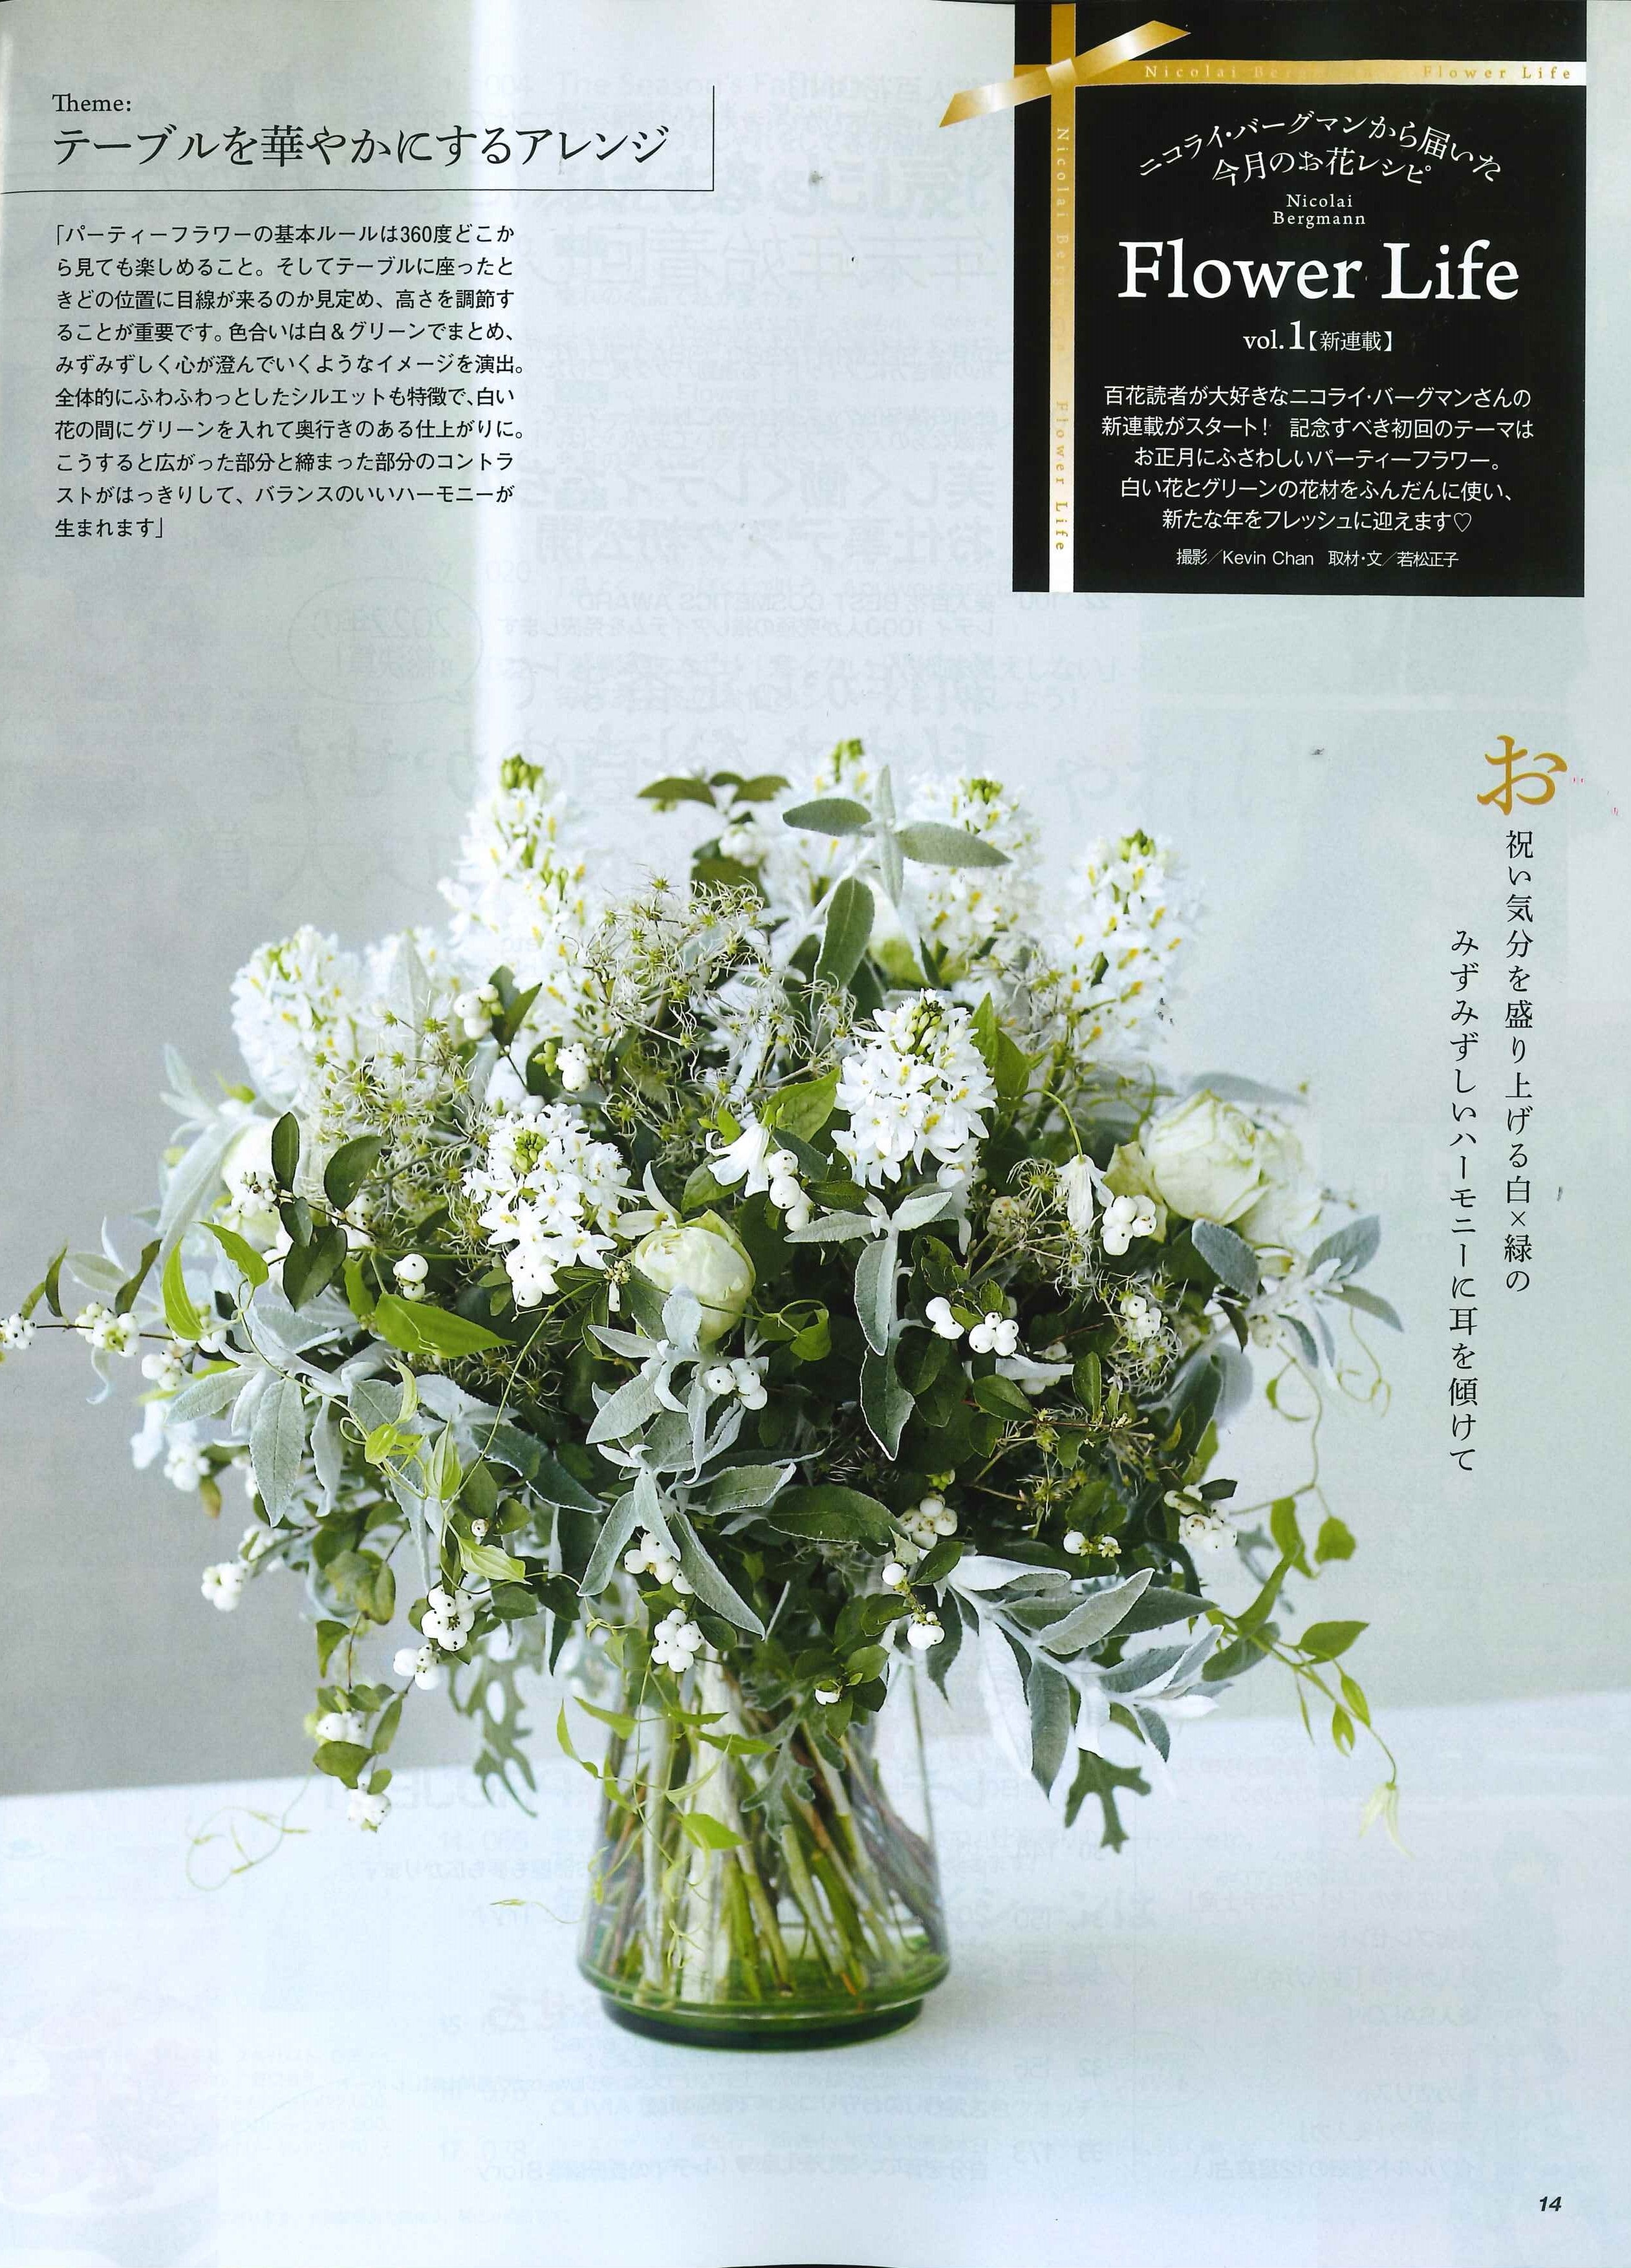 ニコライ・バーグマンが「美人百花」で「Flower Life」の連載スタート